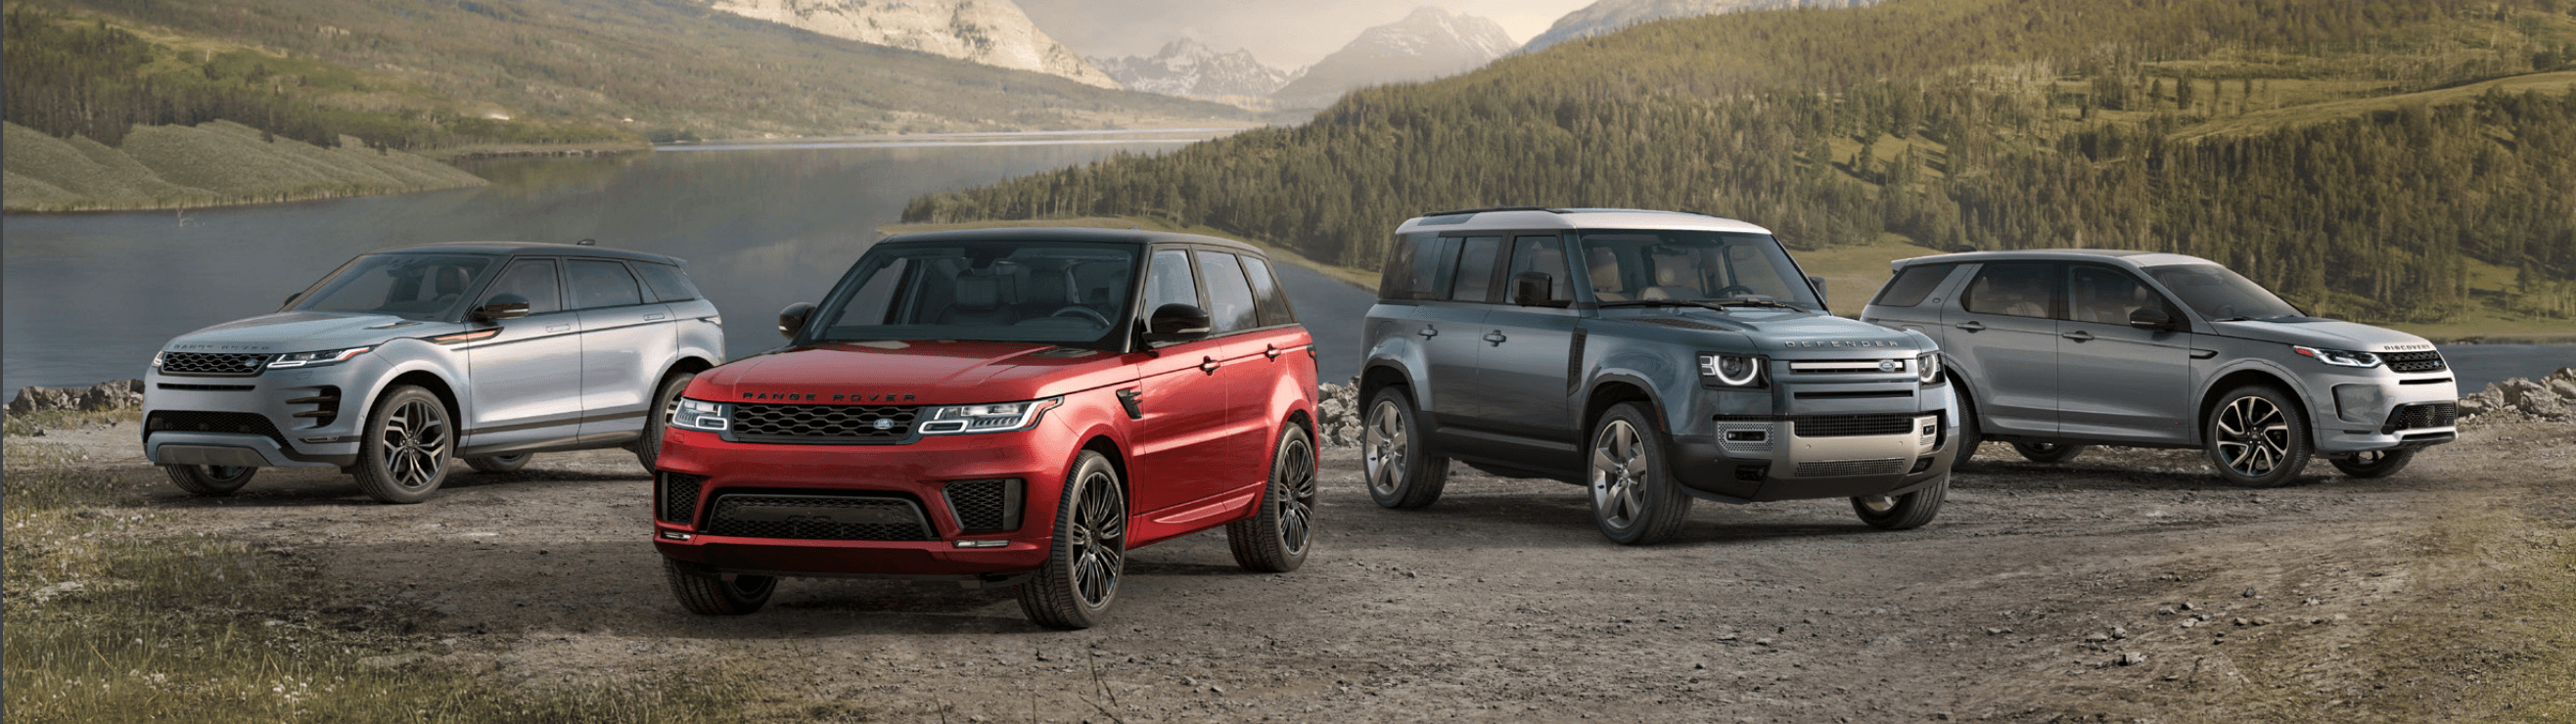 Range Rover Security Bundle - AUTOSTYLE UK